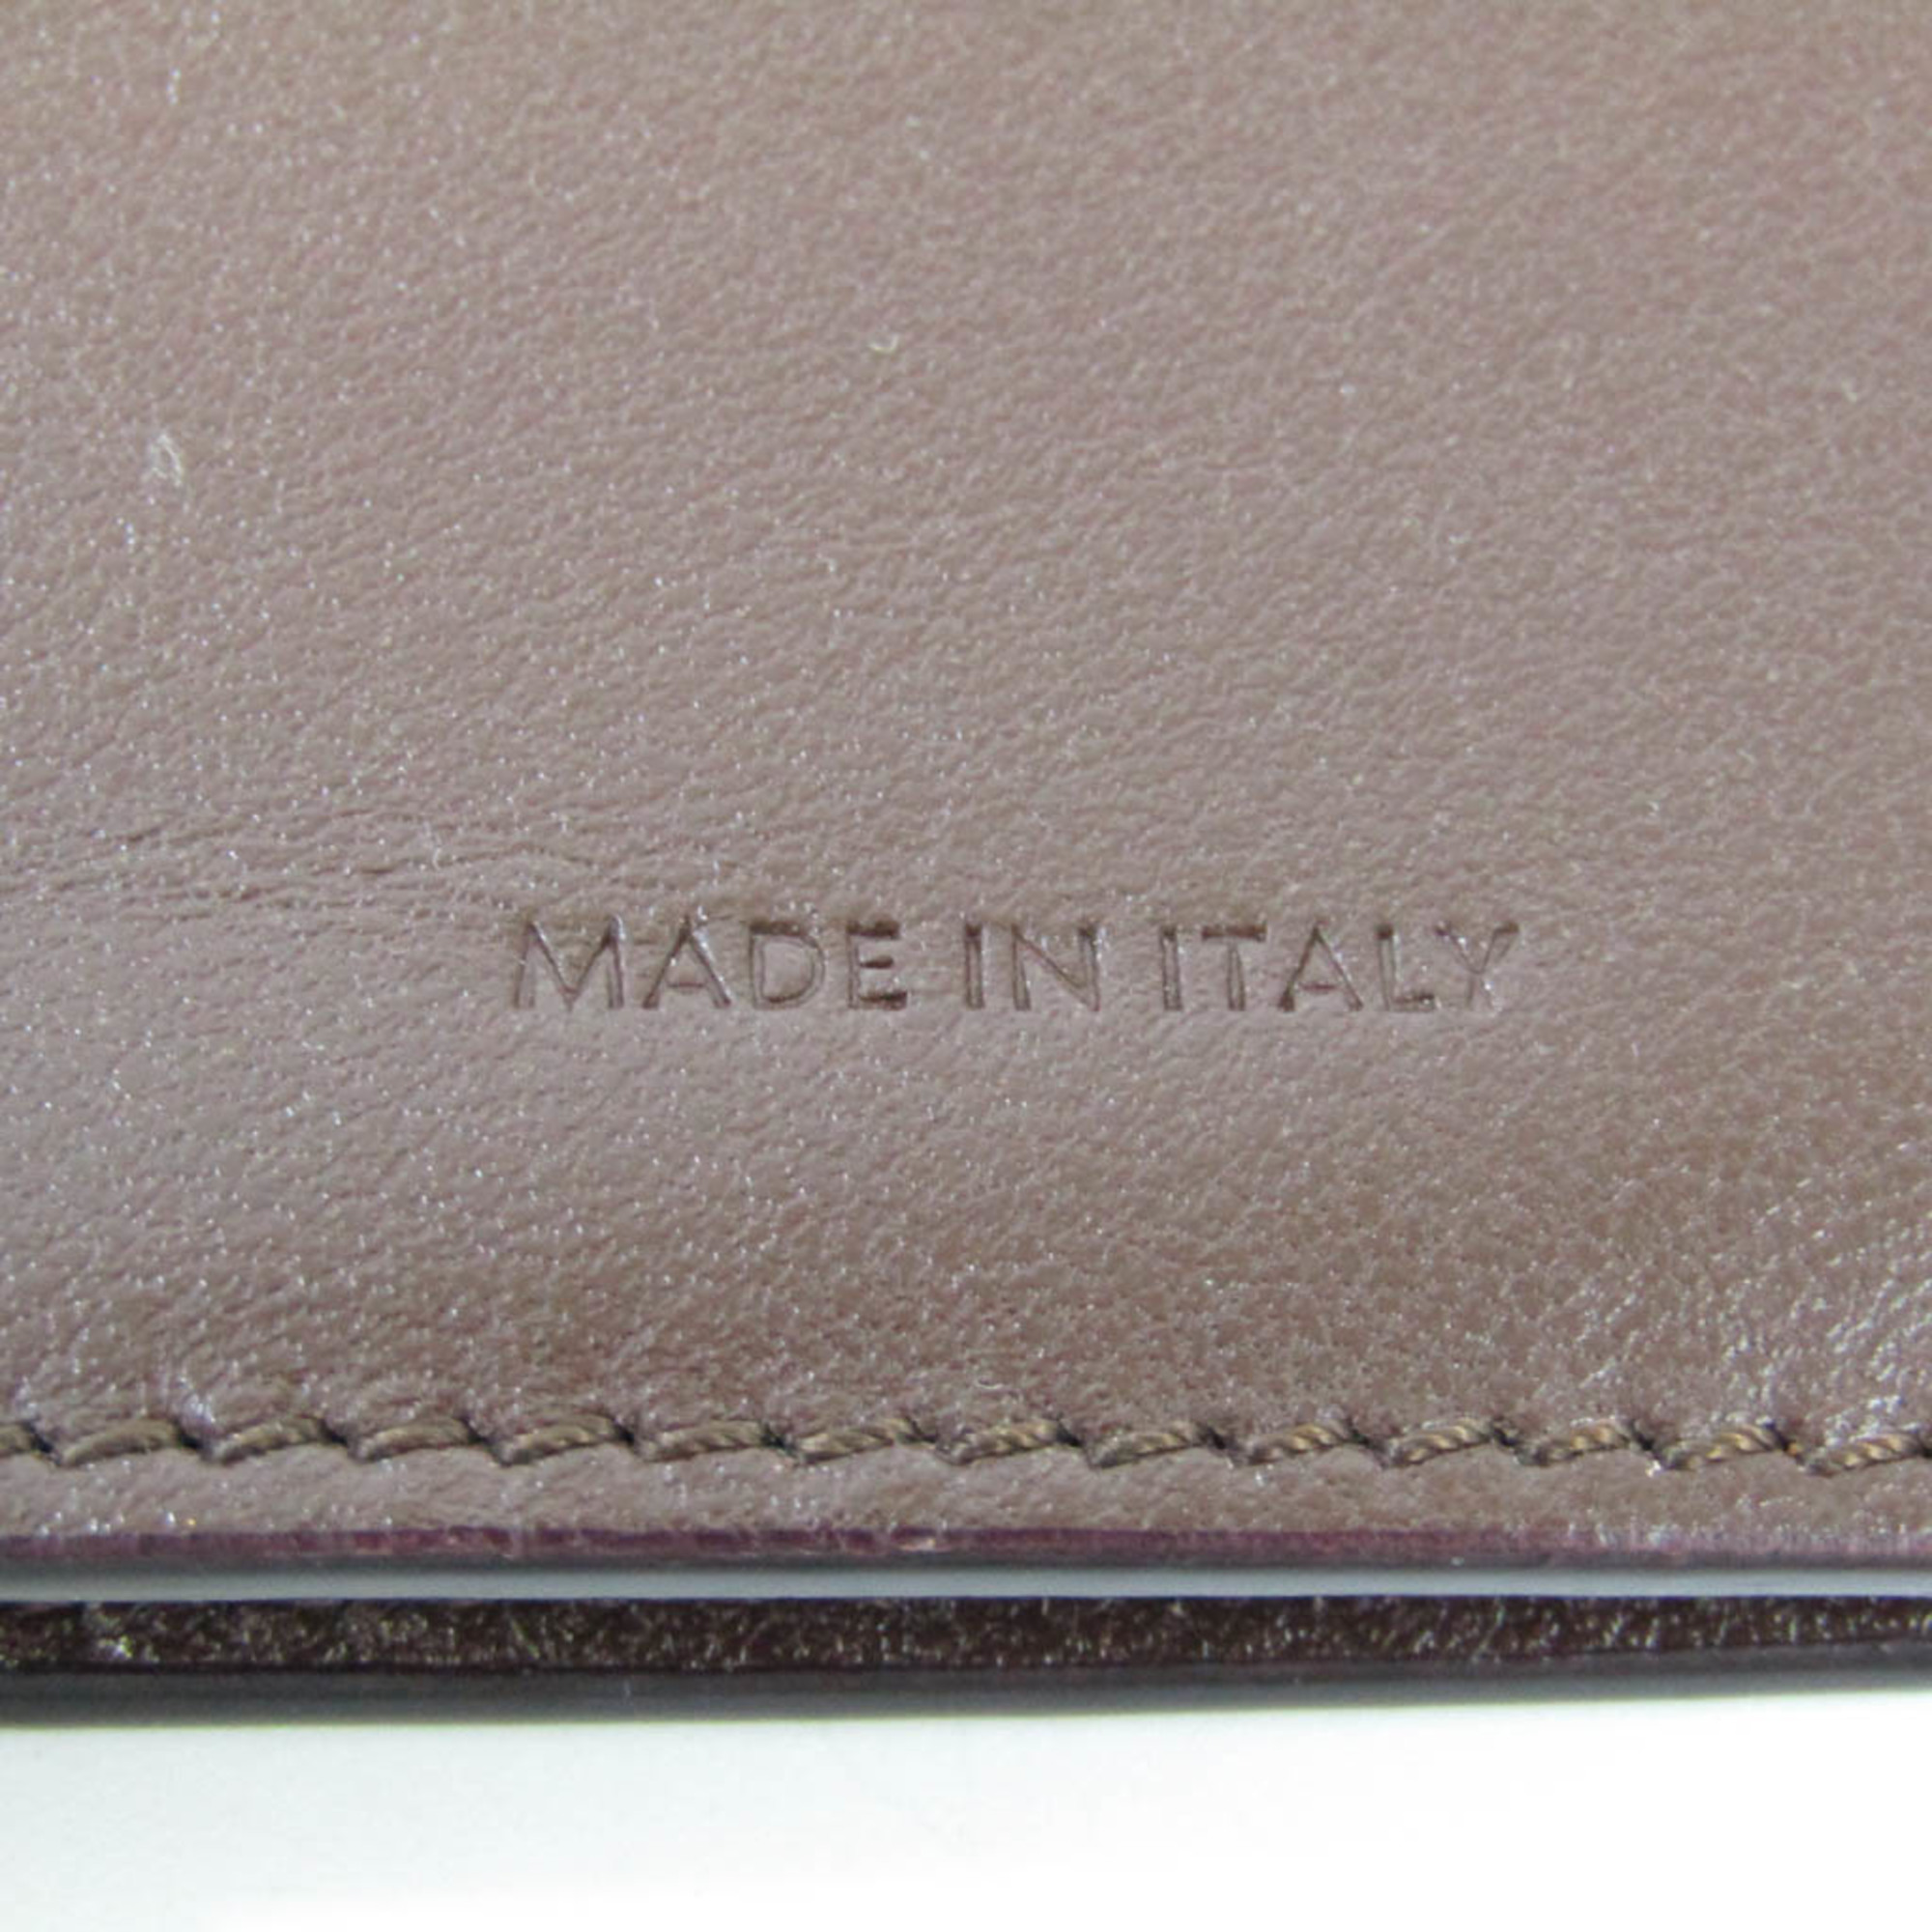 Celine 10C383BEN Women's Leather Long Wallet (bi-fold) Brown